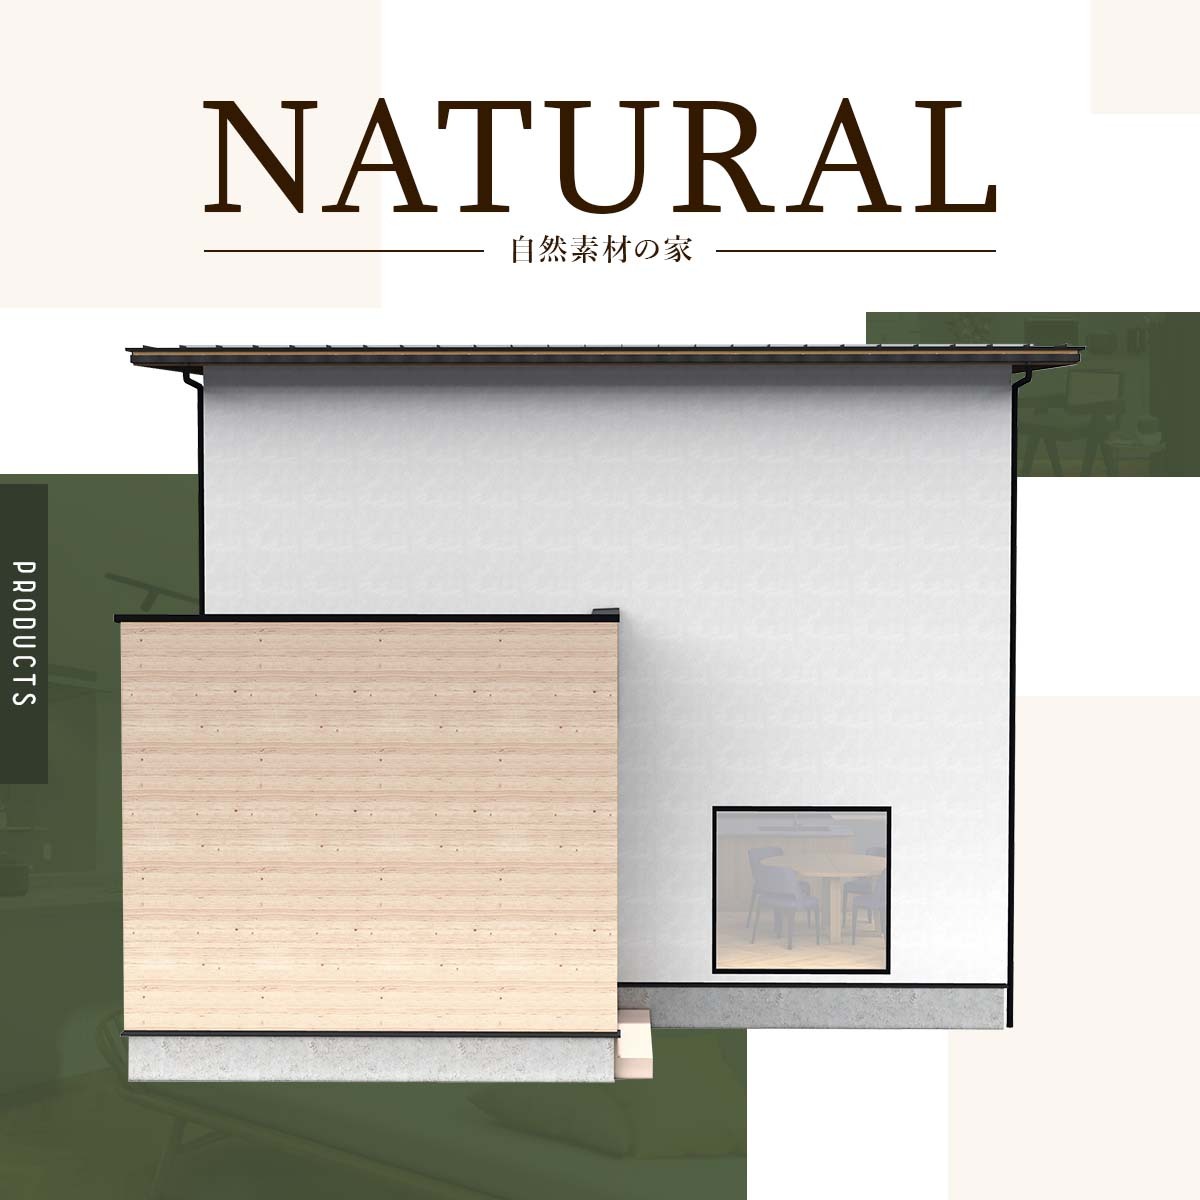 自然素材の家